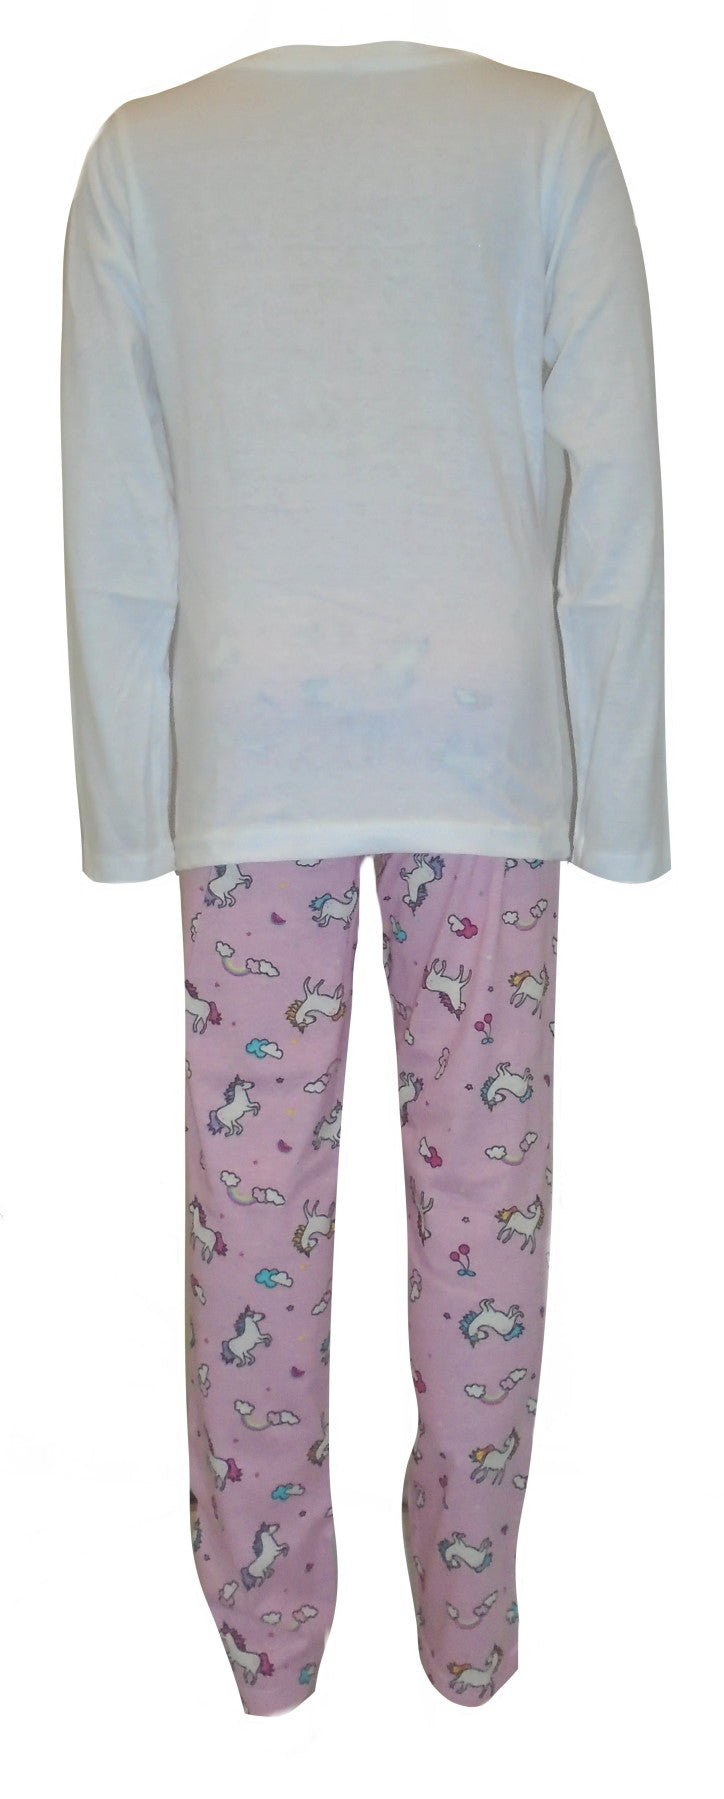 Rainbows & Unicorns Girls Pyjamas